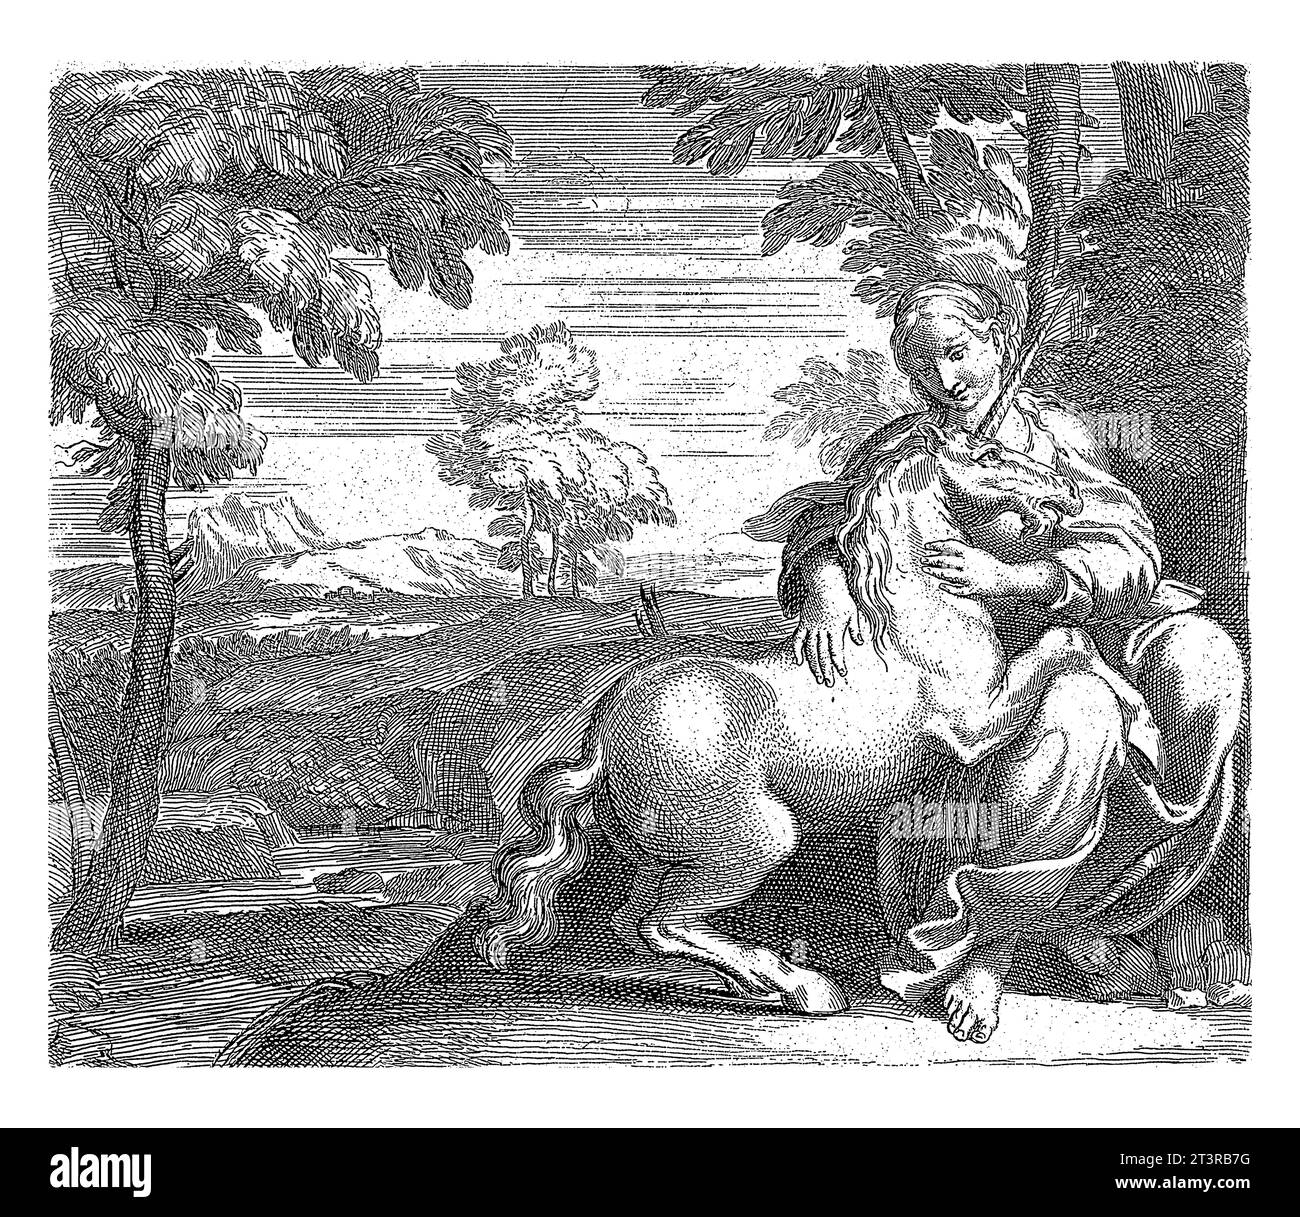 Jeune femme avec une licorne, anonyme, d'après Annibale Carracci, d'après Domenichino, vers 1602 Une jeune femme assise avec une licorne sur ses genoux Banque D'Images